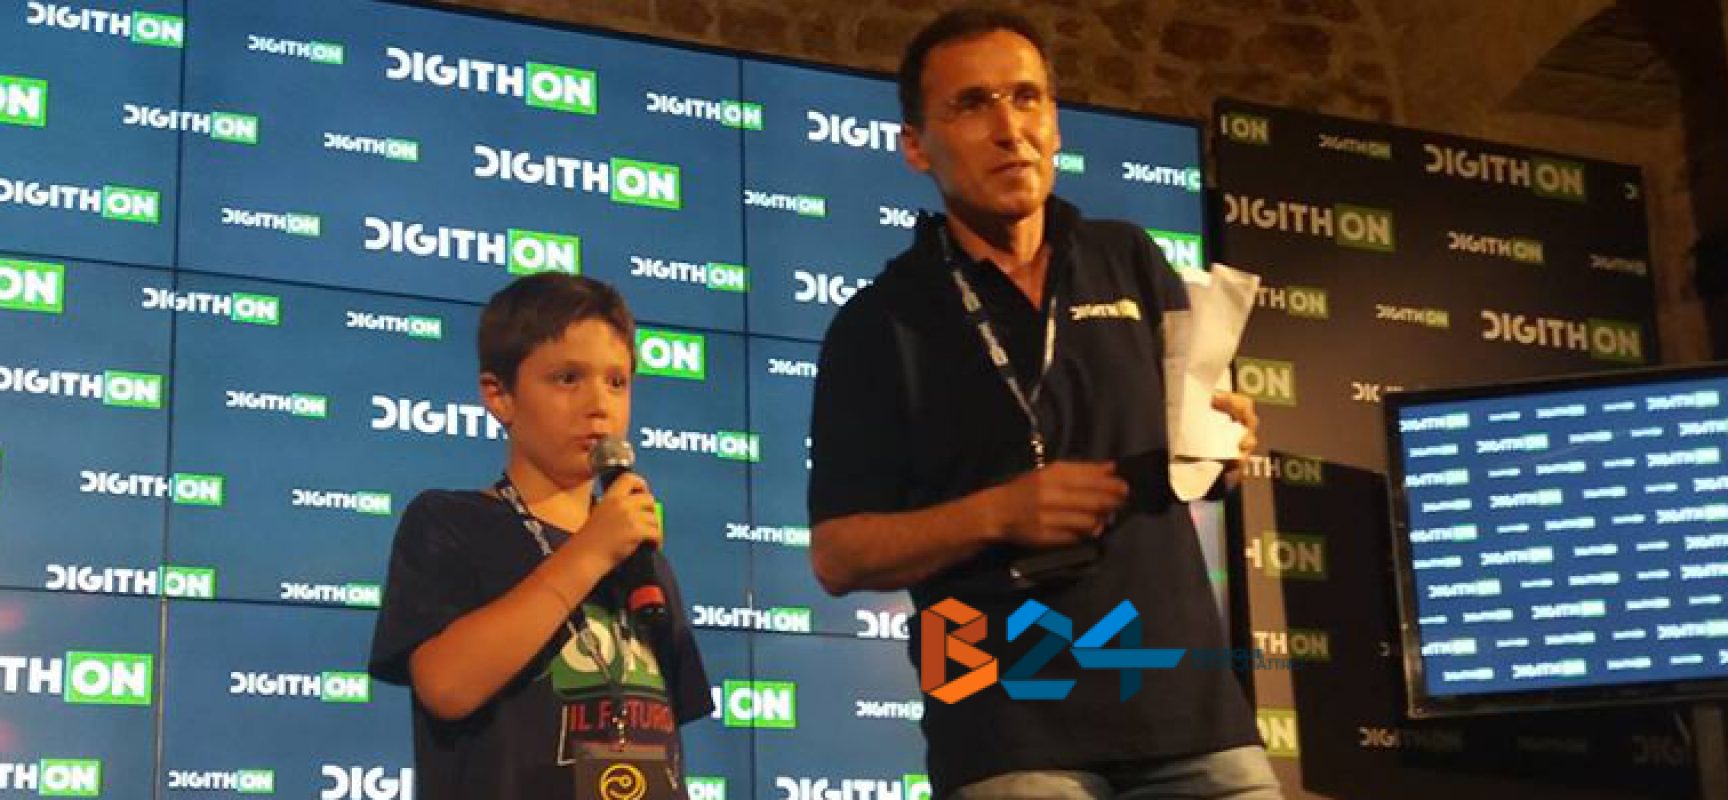 DigithON 2017, la stampa estera parla della startup del piccolo biscegliese Valerio Di Luzio